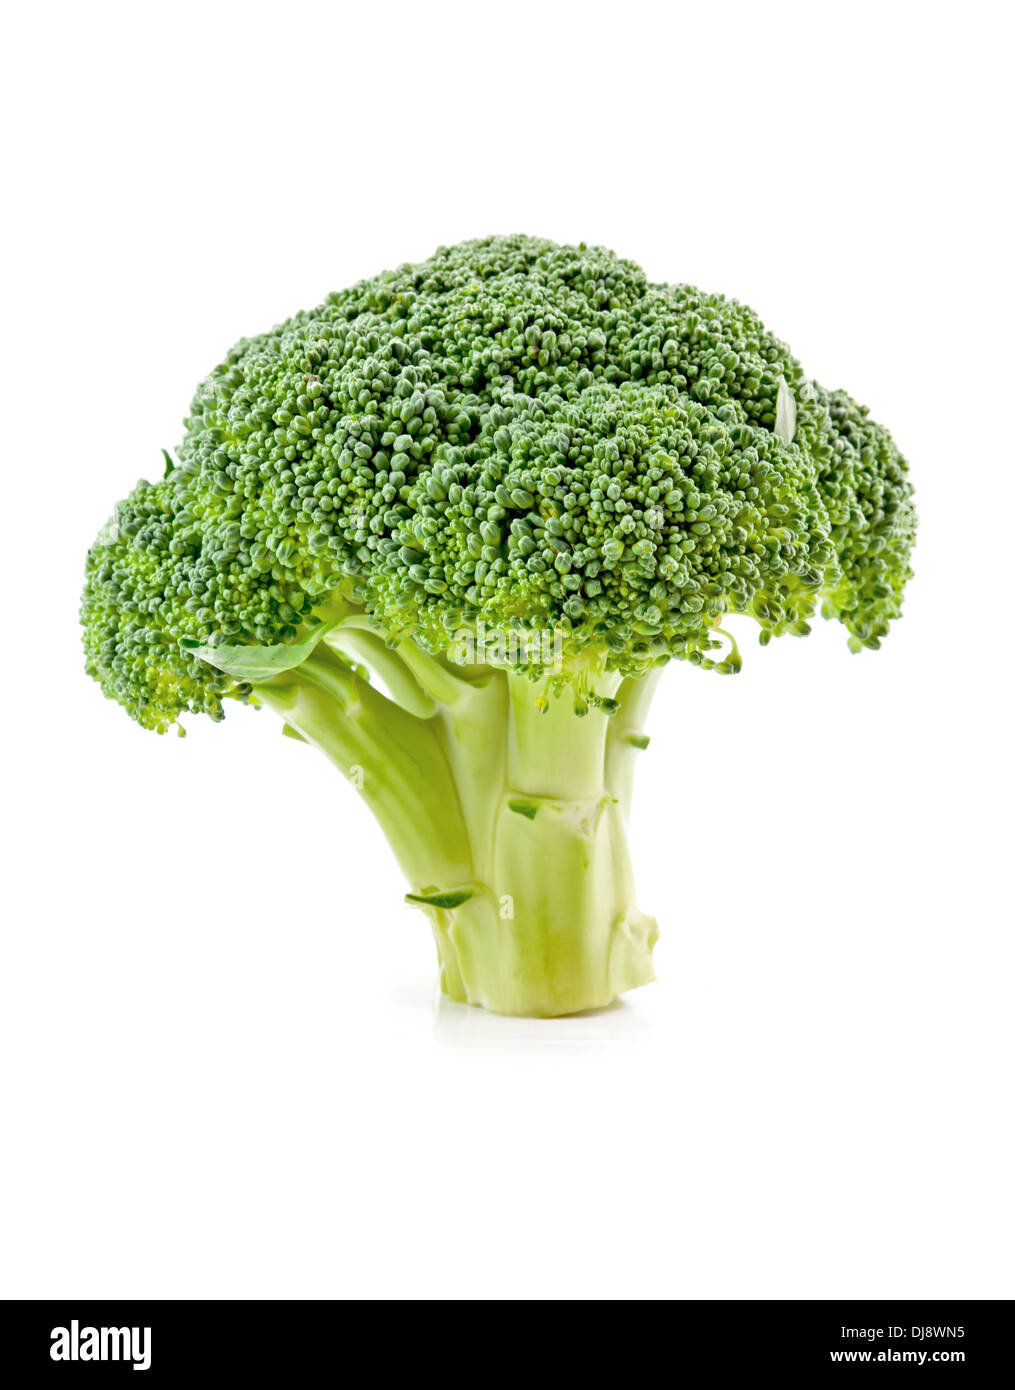 fresh raw broccoli isolated on white background Stock Photo